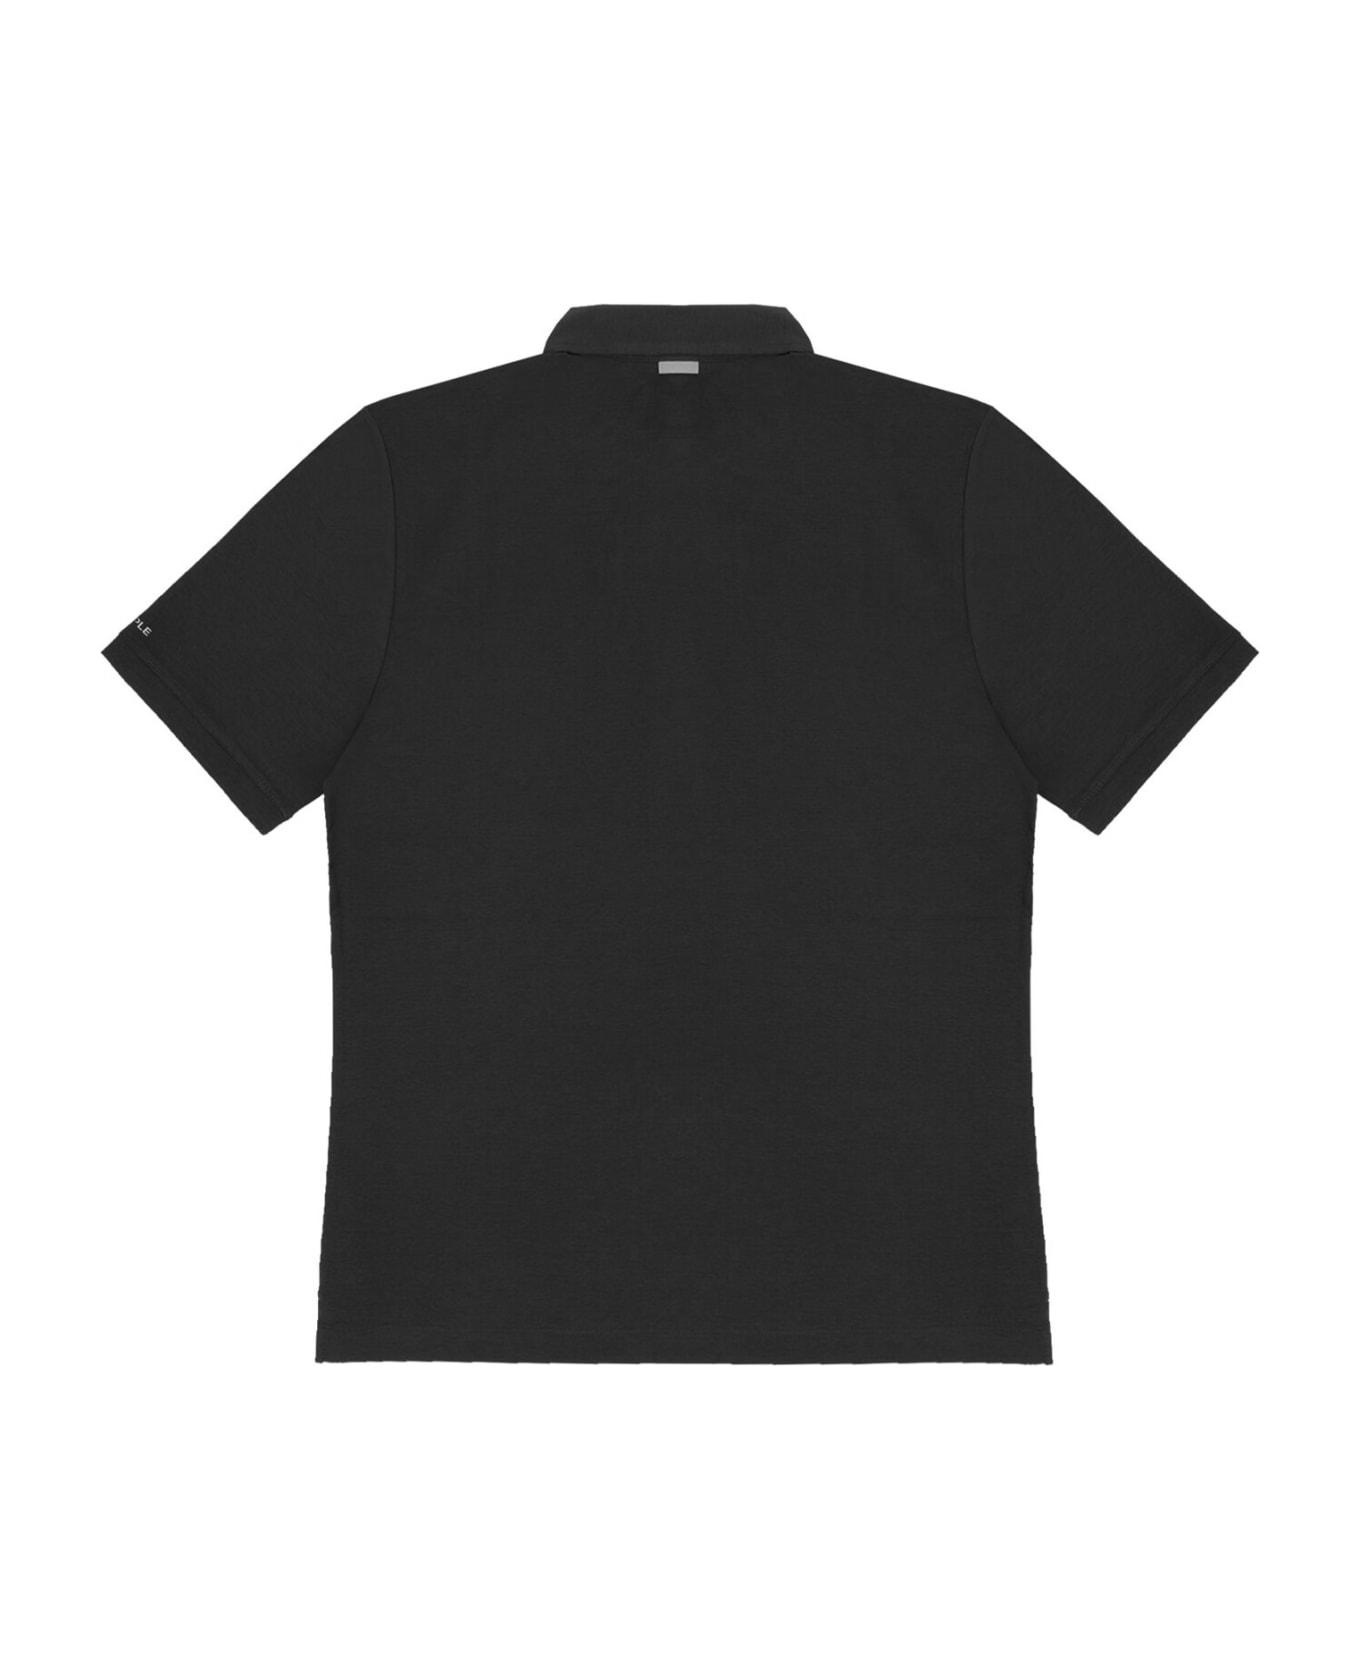 People Of Shibuya Black Short-sleeved Polo Shirt - NERO